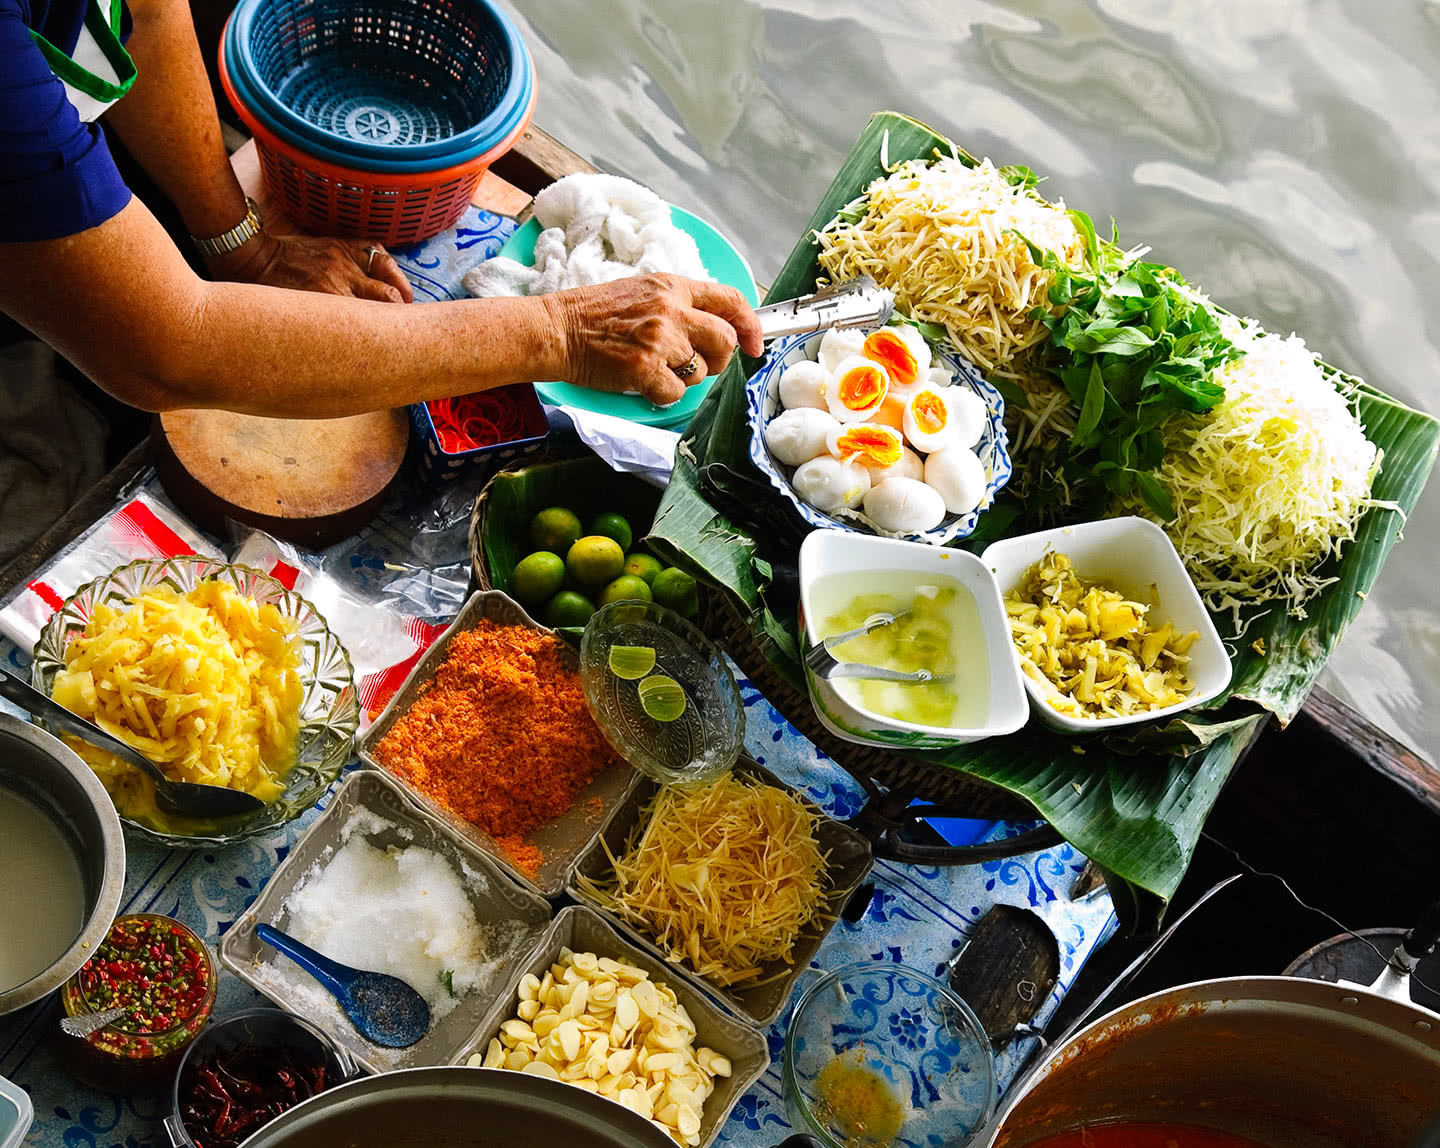 La cuisine thaïlandaise